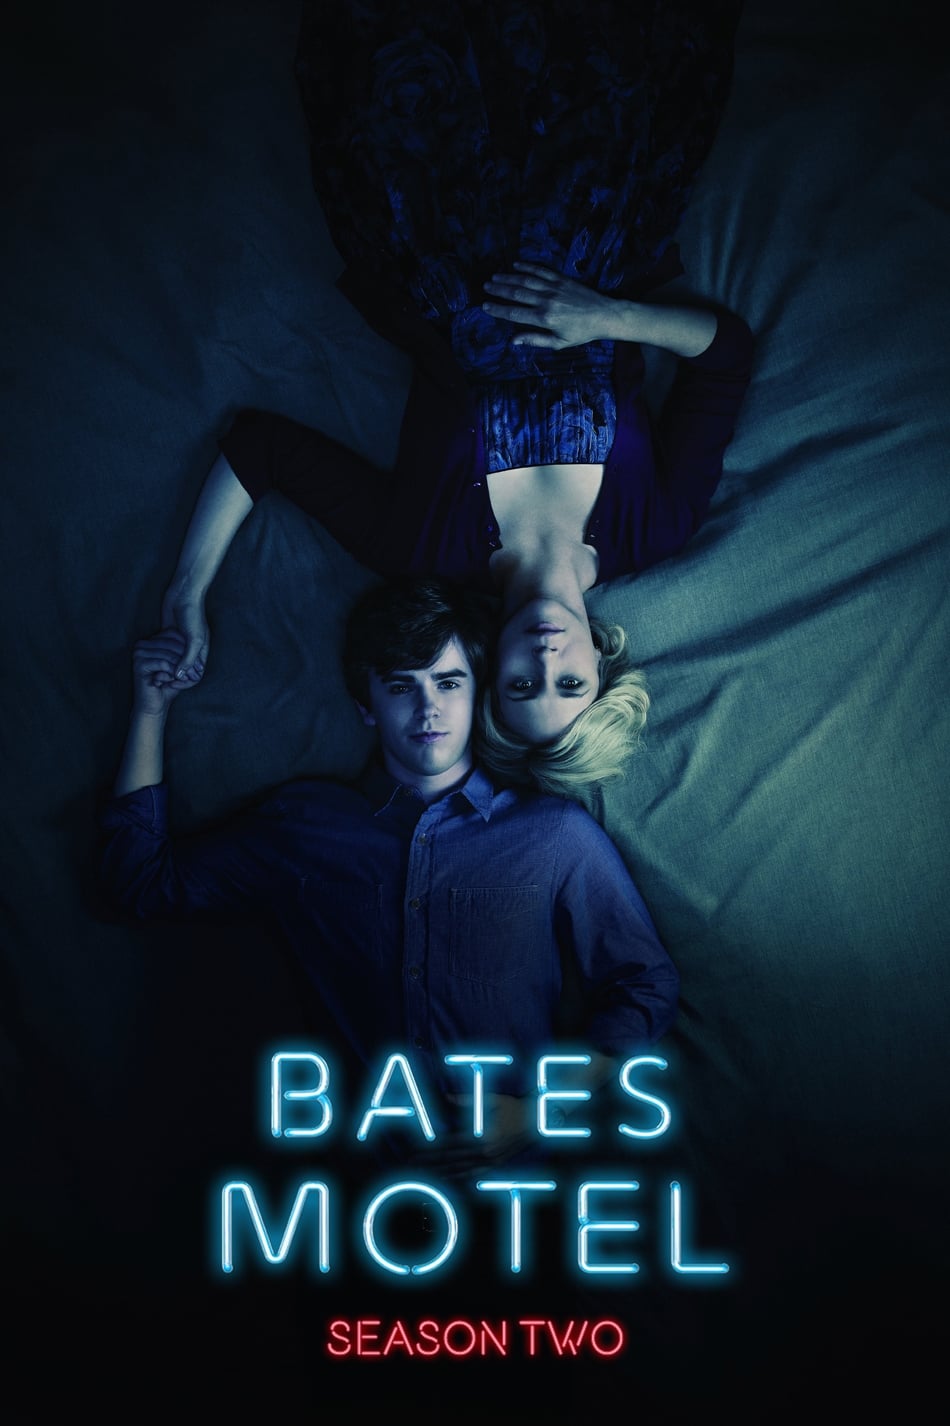 ดูหนังออนไลน์ฟรี Bates Motel (2014) Season 2 ซับไทย EP 2 เบส โมเทล ปี2 ตอนที่2 (ซับไทย)